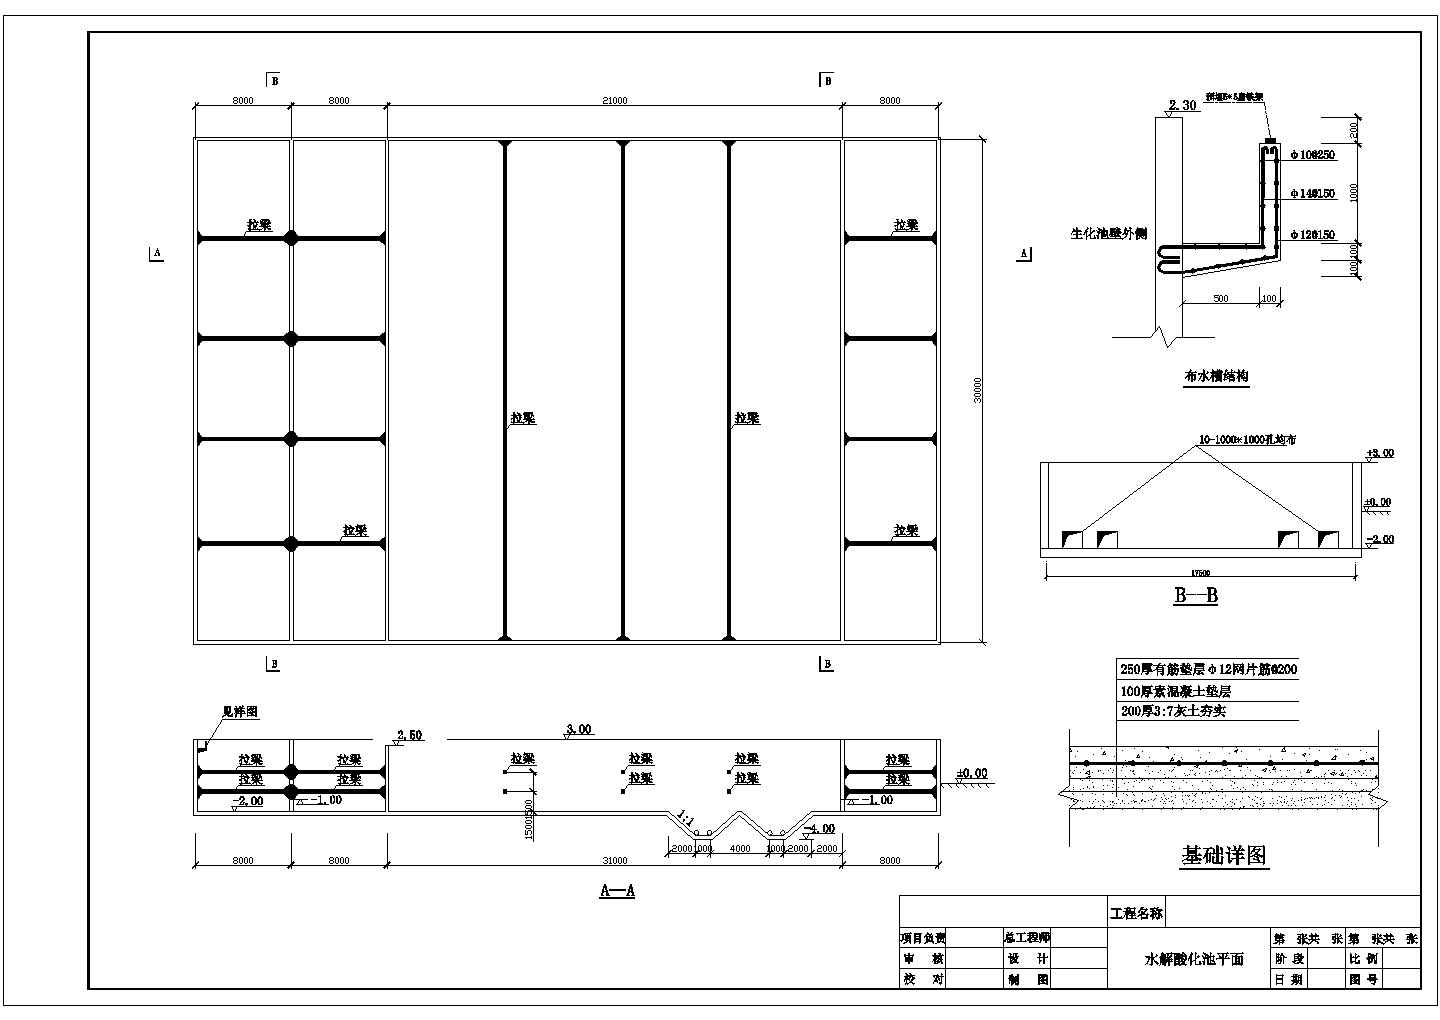 四川省某造纸厂污水处理CAD全套图